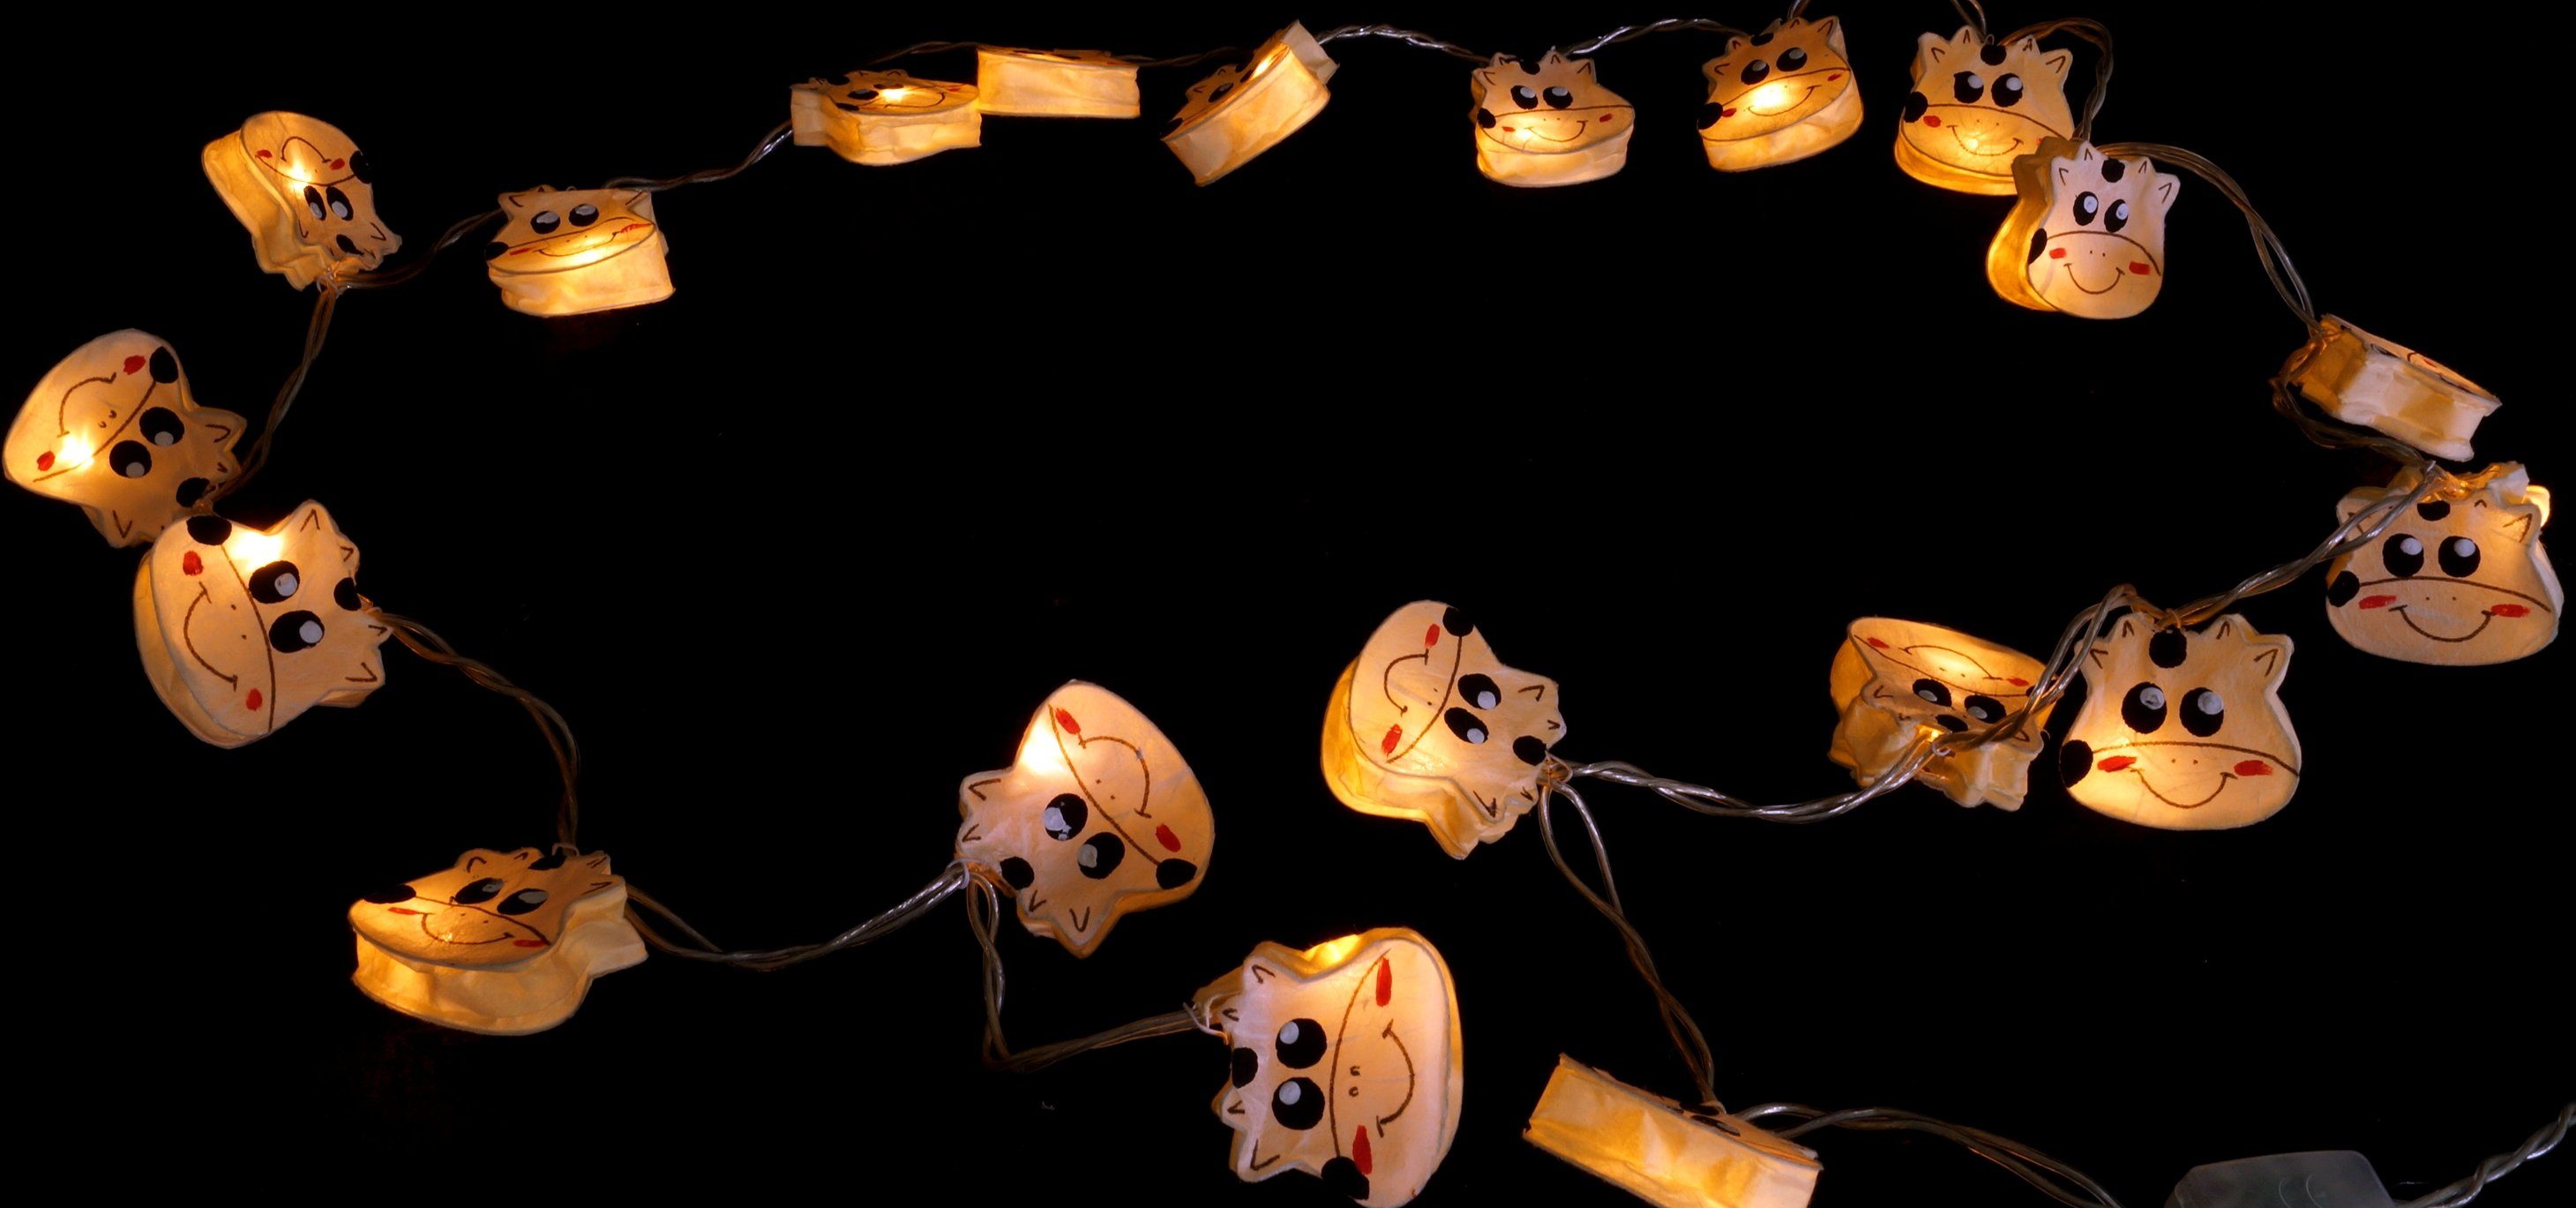 Guru-Shop LED-Lichterkette »LED Kinderlichterkette Kuh« online kaufen | OTTO